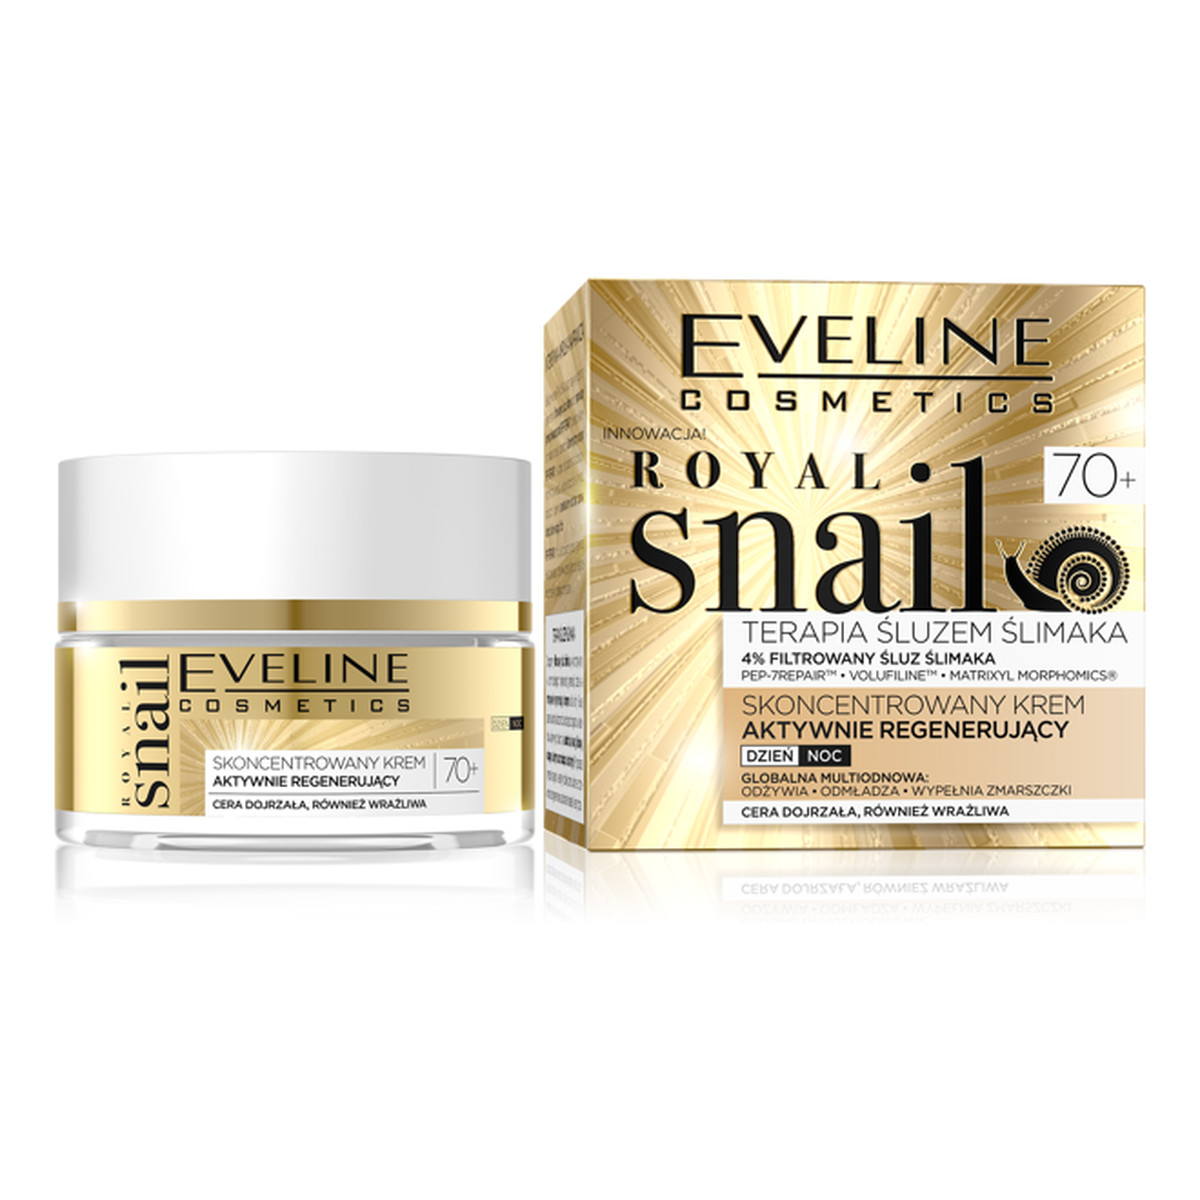 Eveline Royal Snail skoncentrowany krem aktywnie regenerujący 70+ na dzień i na noc 50ml